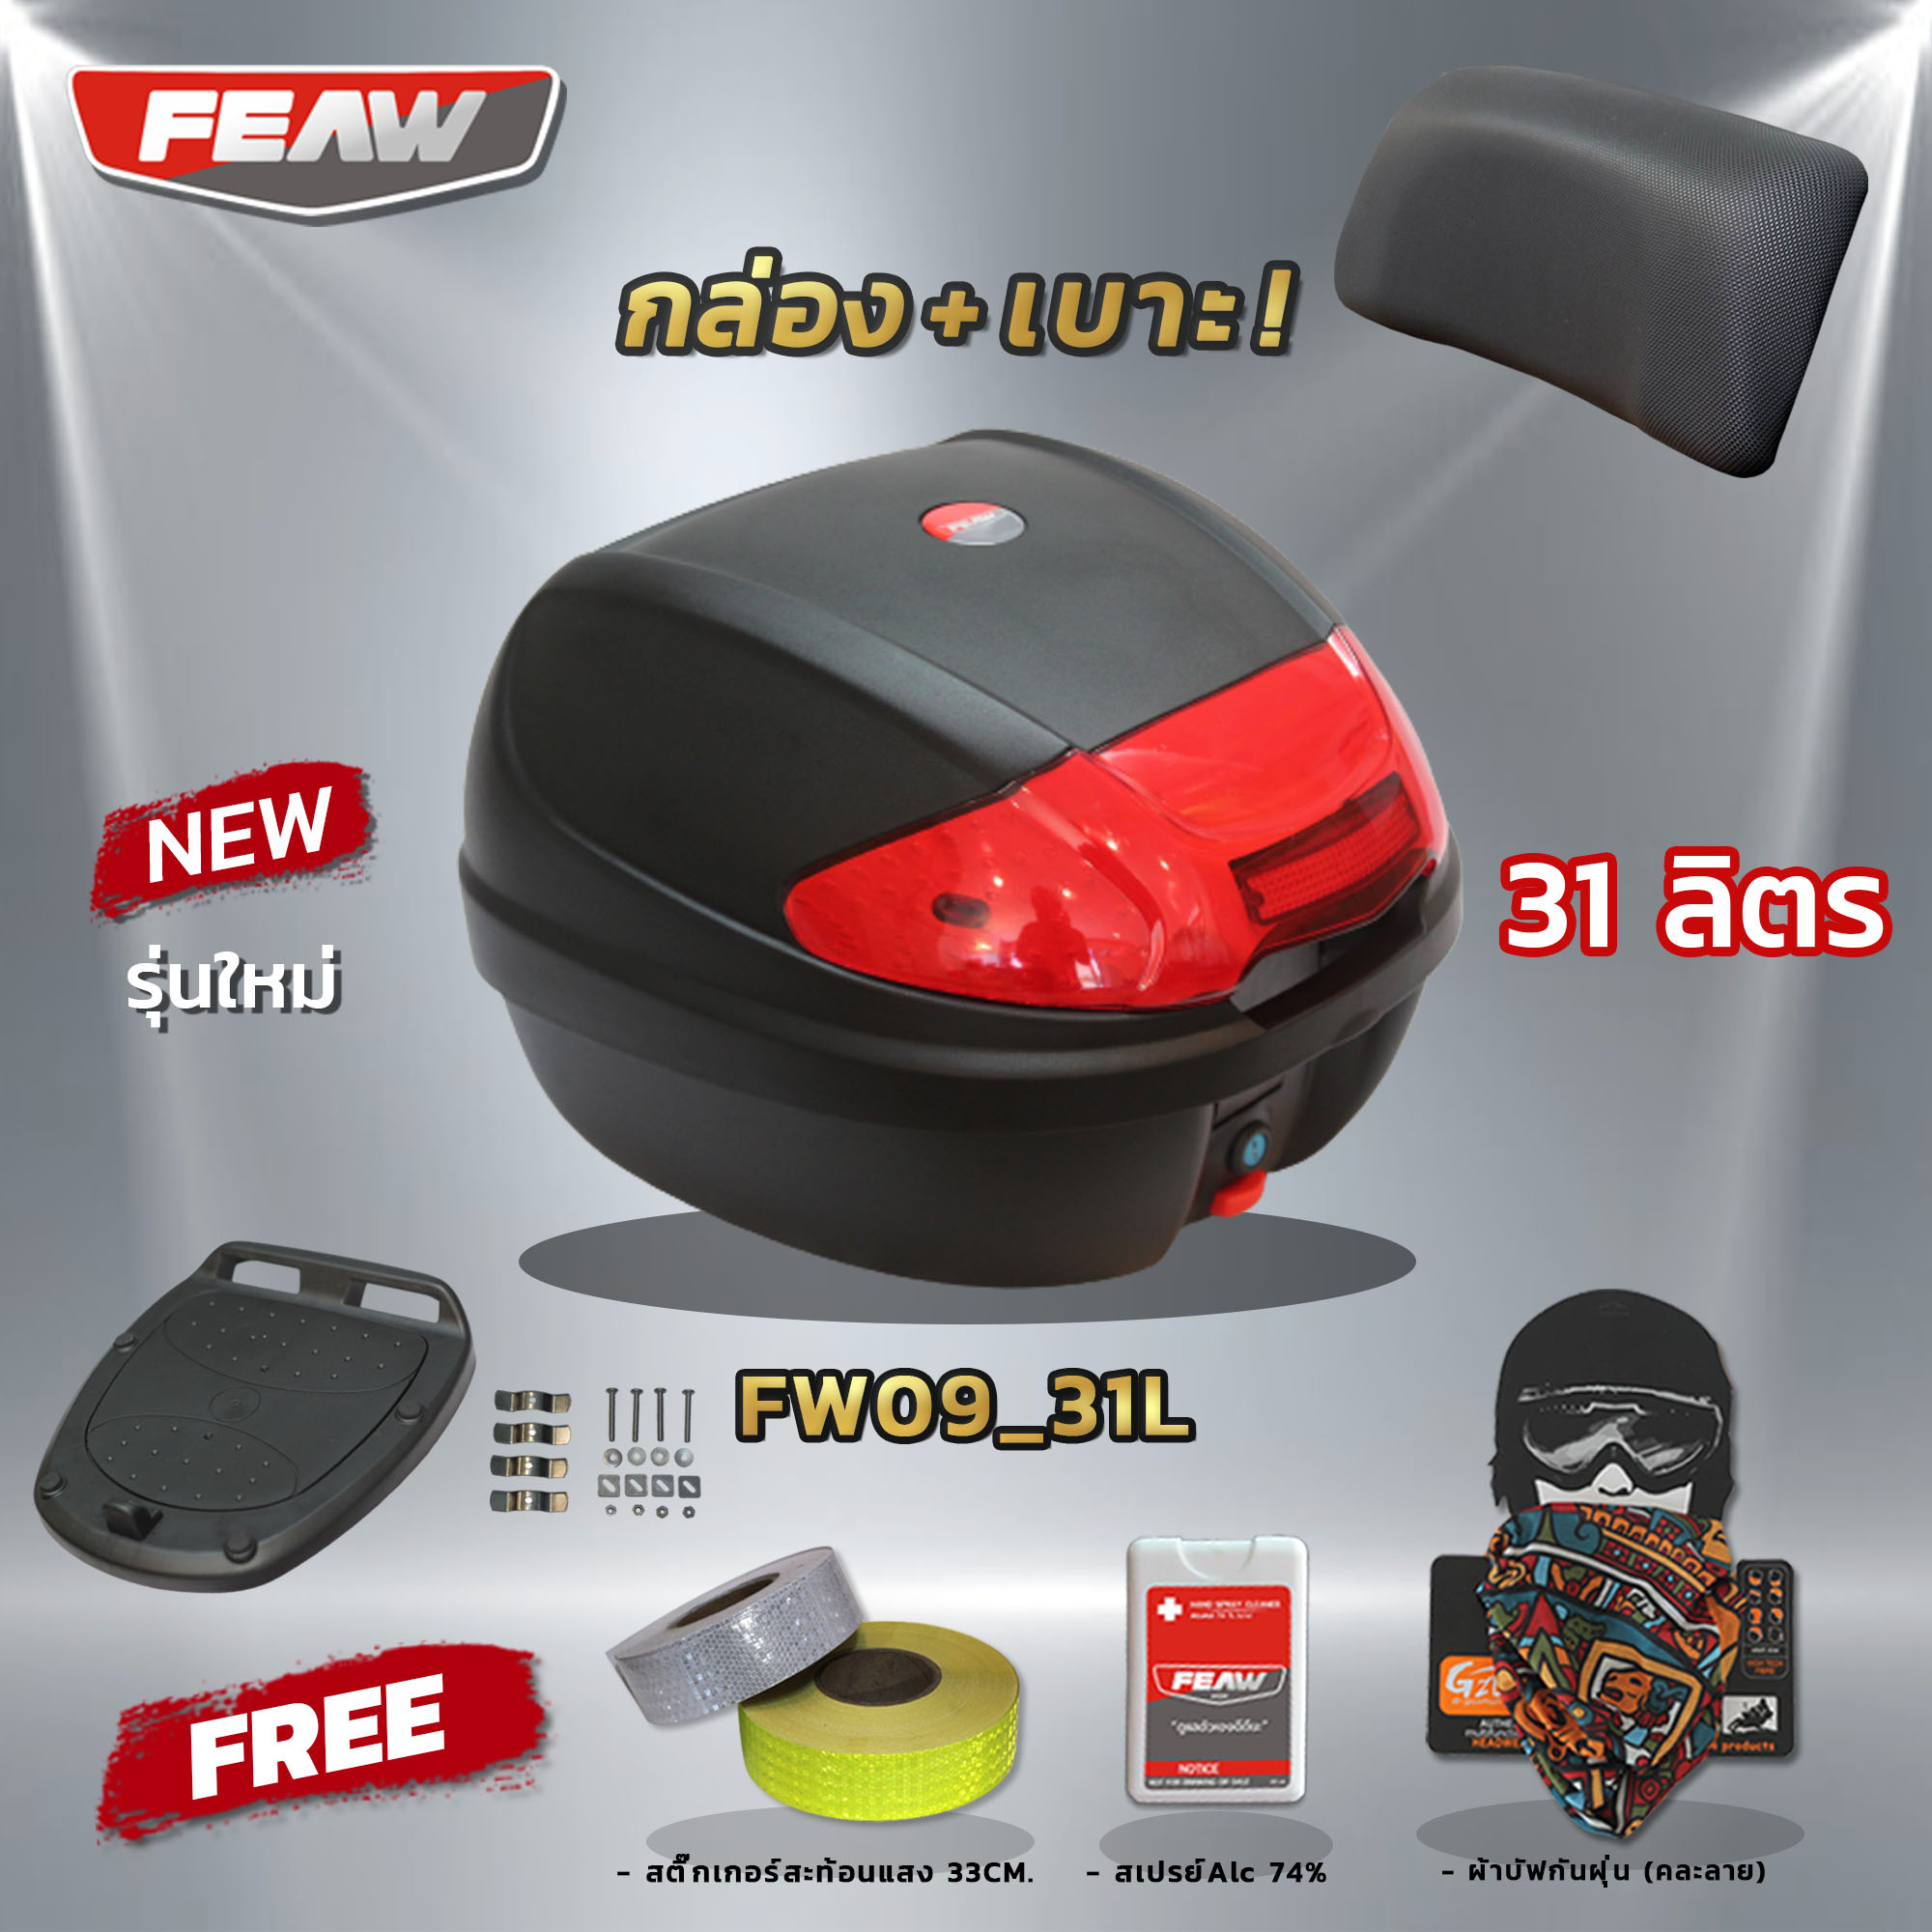 มาใหม่!! กล่องท้าย 31 ลิตรถอดได้ FEAW FW09 31L+ชุดถาดรองอย่างดี (แท้อย่างหนา) สวย ถูก ดี มีรับประกัน กล่องเฟี้ยว แถมฟรี 3 รายการ++